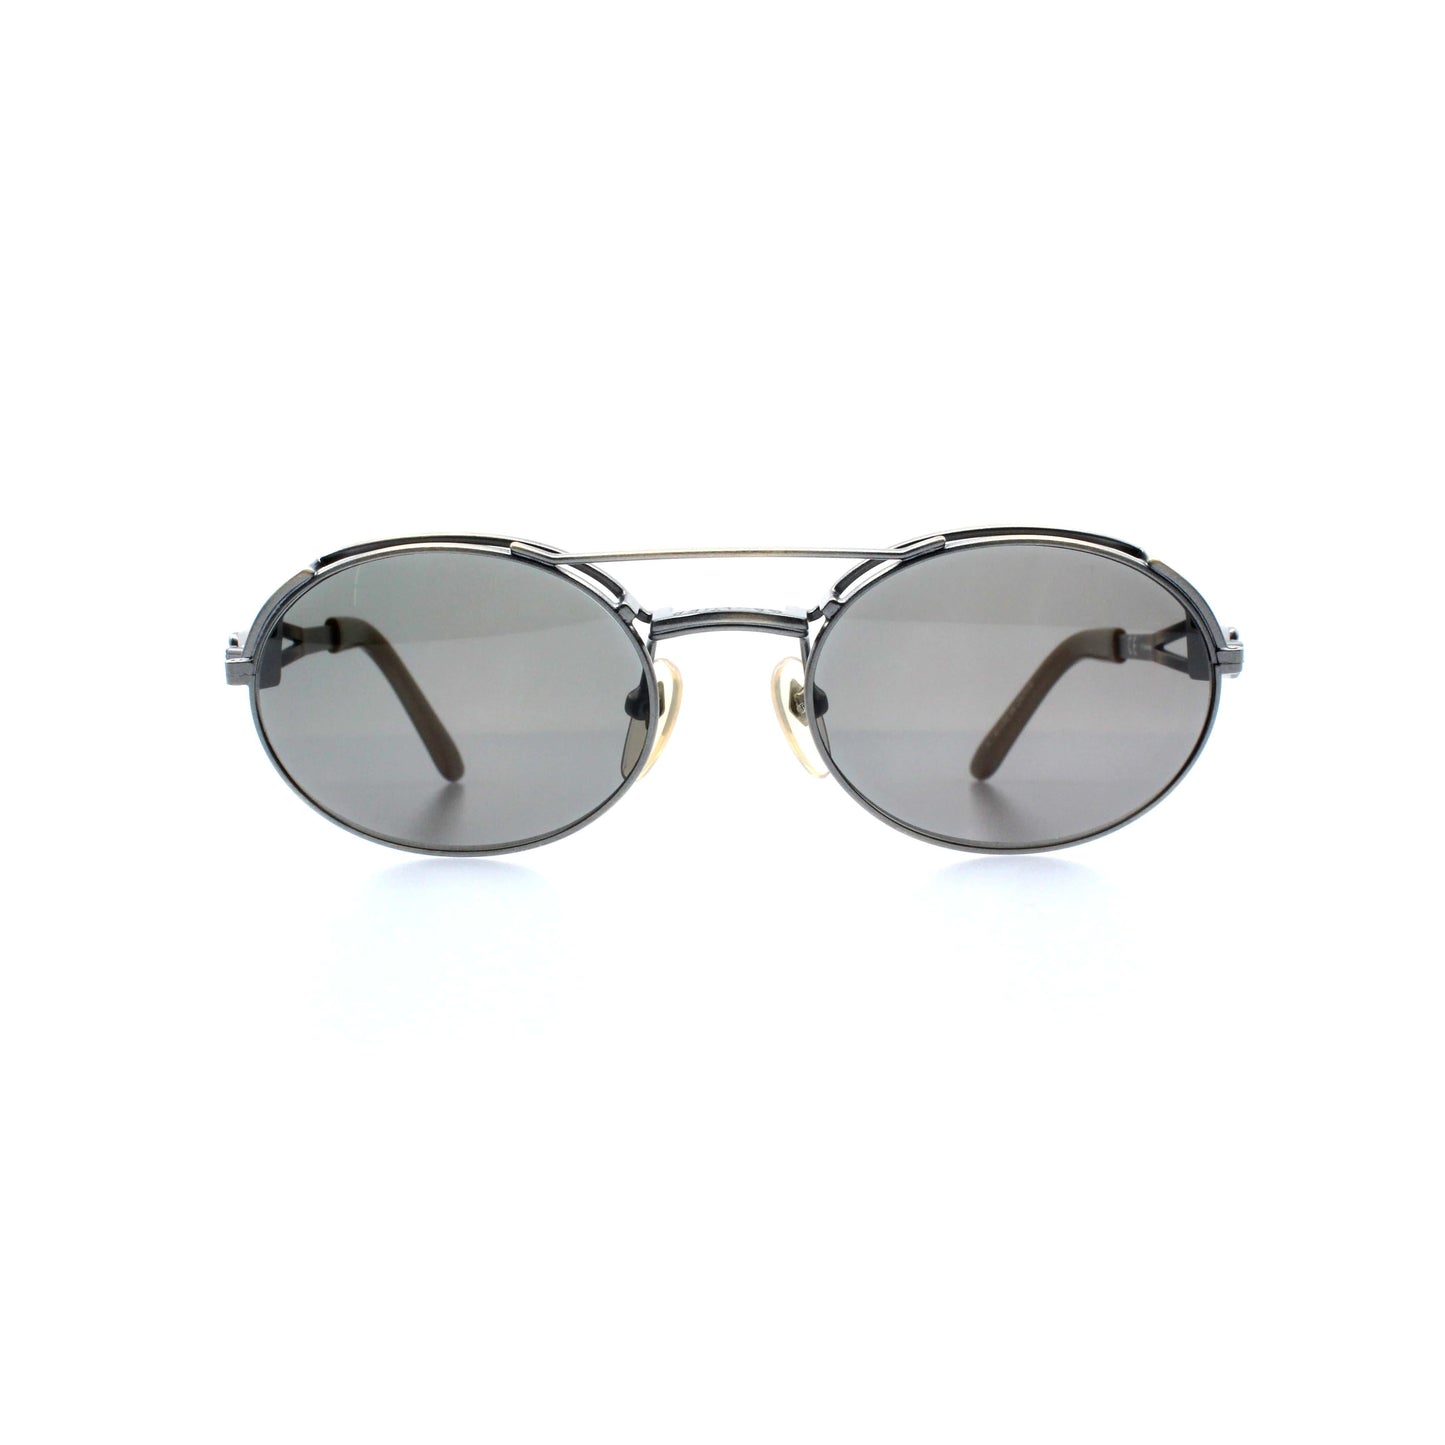 Copper Vintage Jean Paul Gaultier 56-7107 Sunglasses RSTKD Vintage